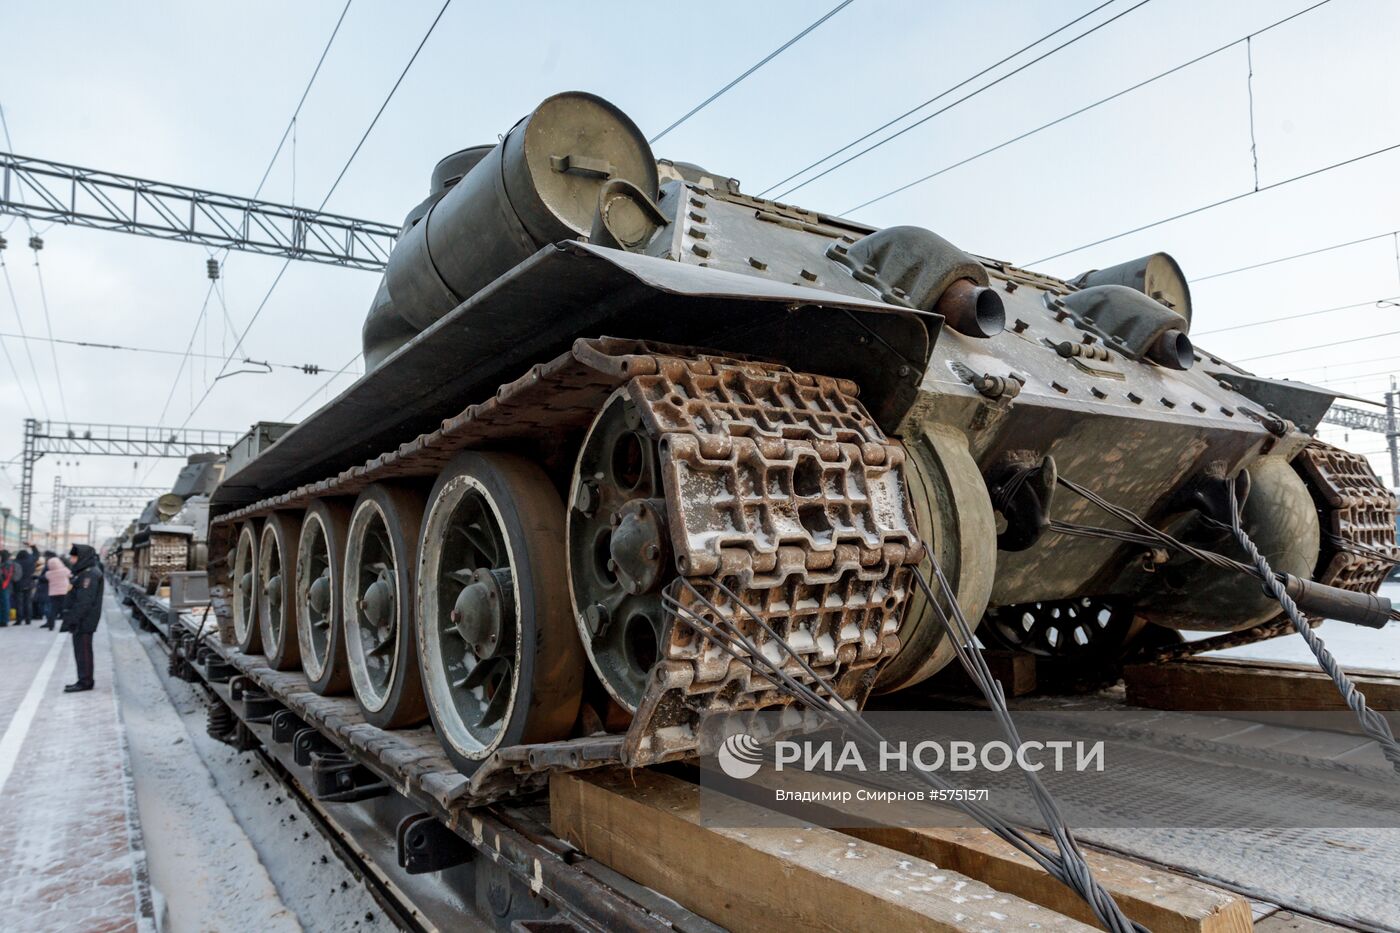 Прибытие эшелона с 30 танками Т-34 в Иркутск